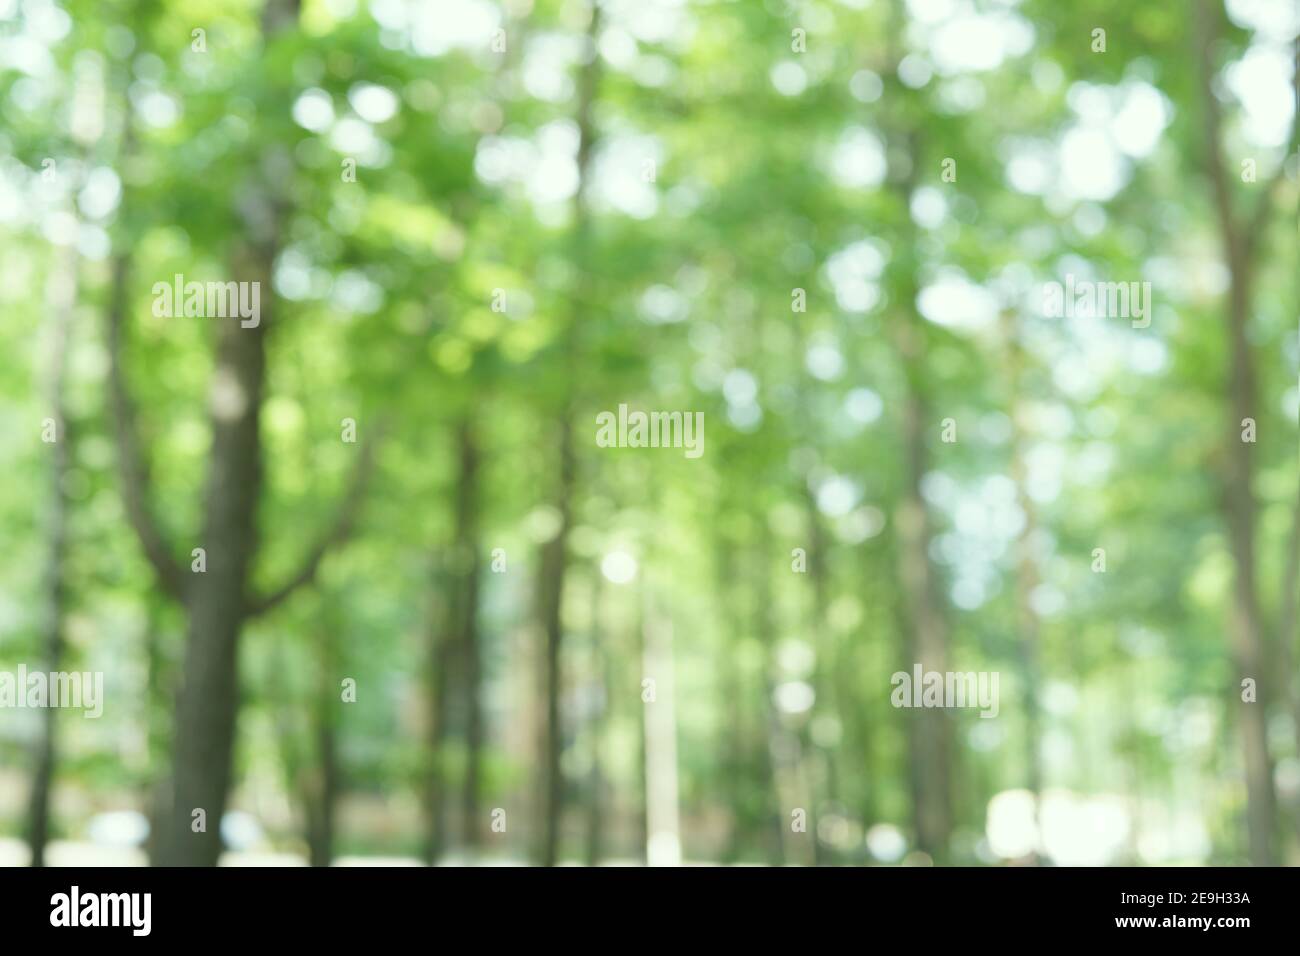 Forêt floue. Feuillage vert frais avec bokeh doux, arbres flous. Fond bio naturel. Été, soleil de printemps Banque D'Images